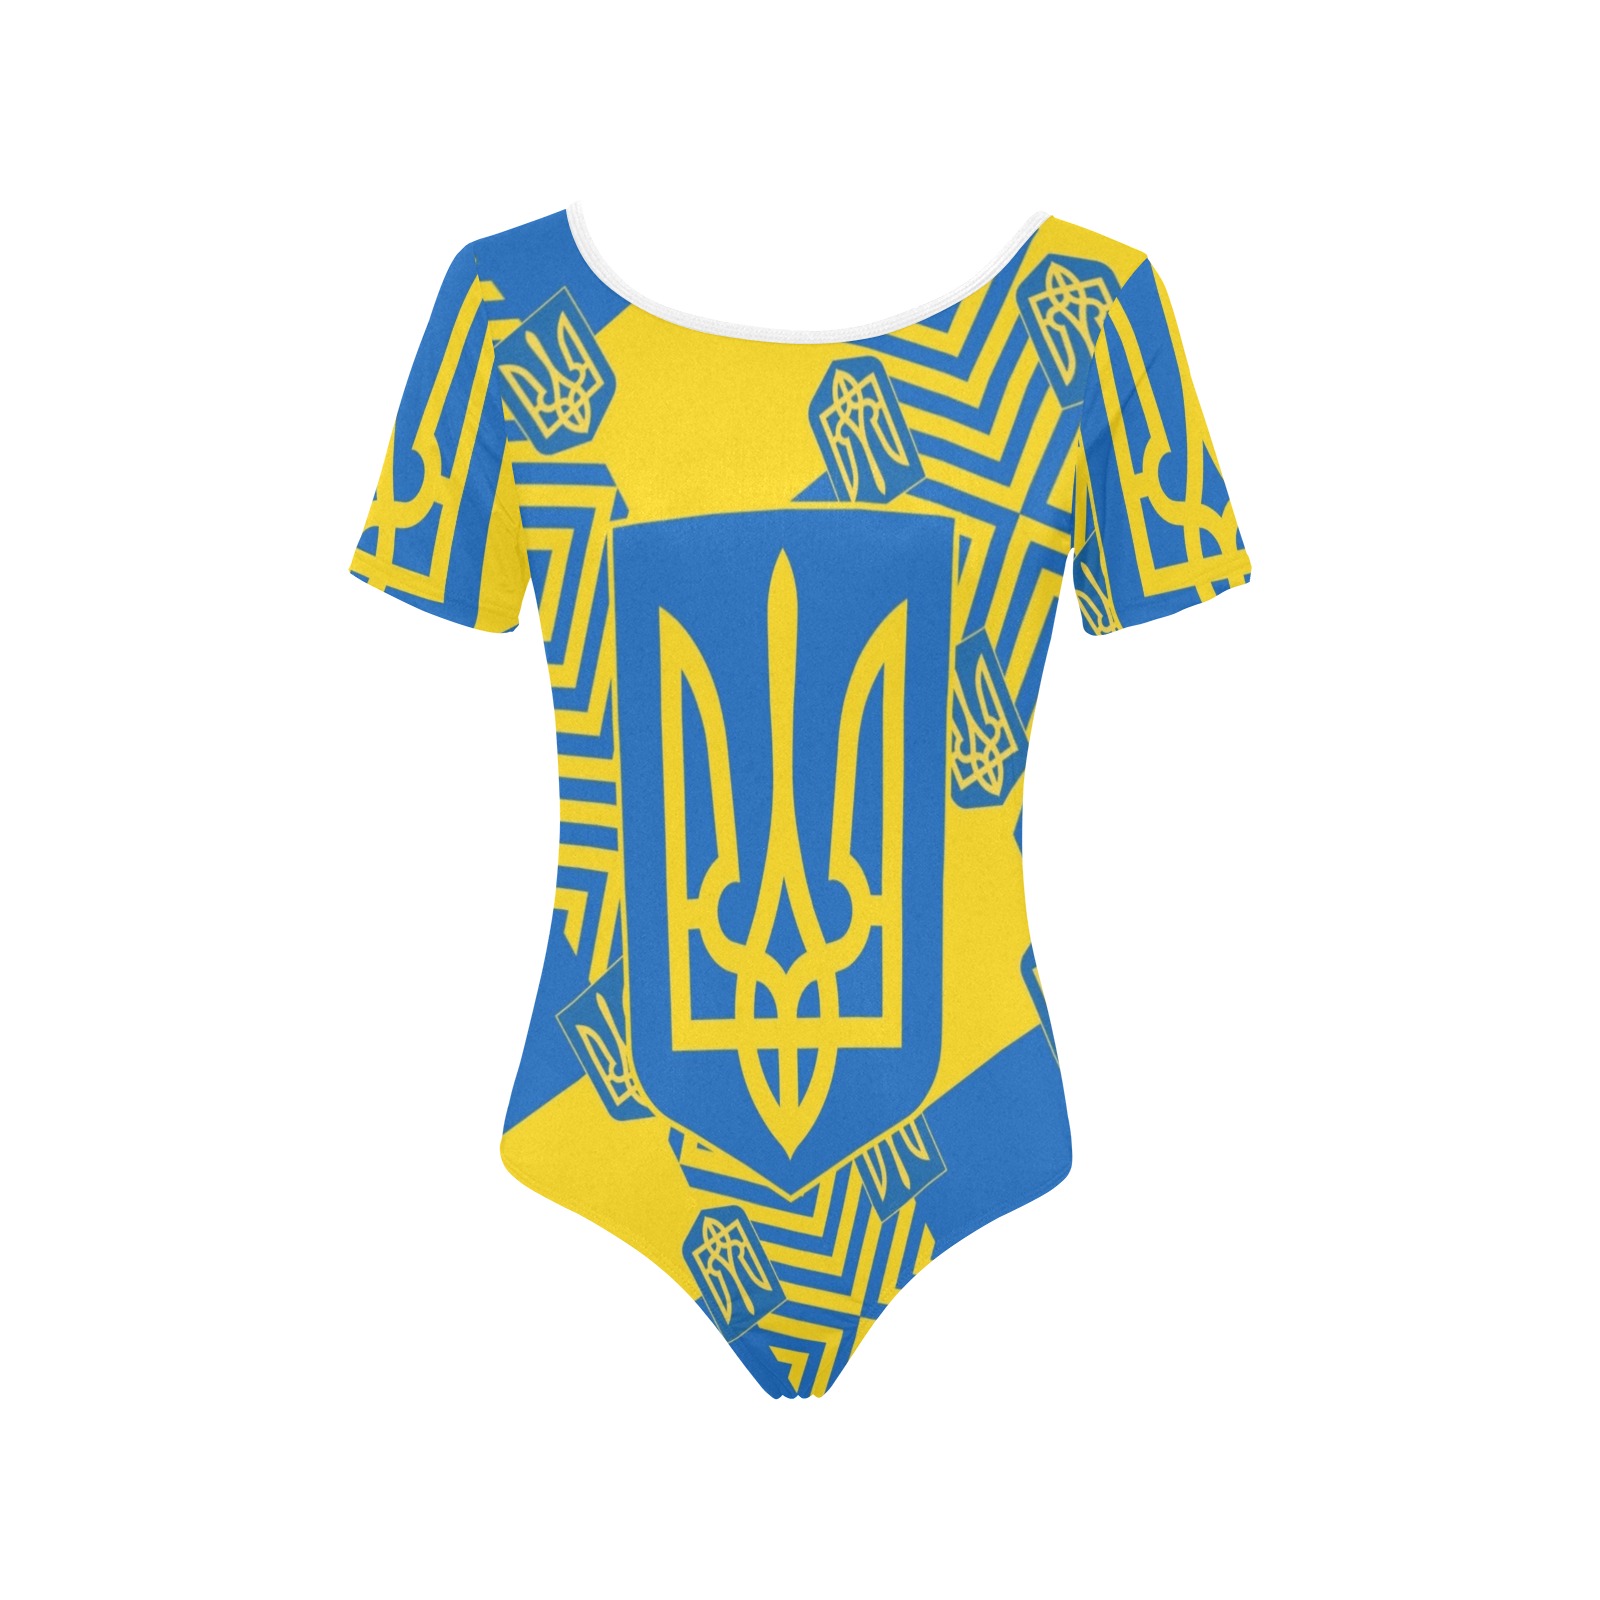 UKRAINE 2 Women's Short Sleeve Bodysuit